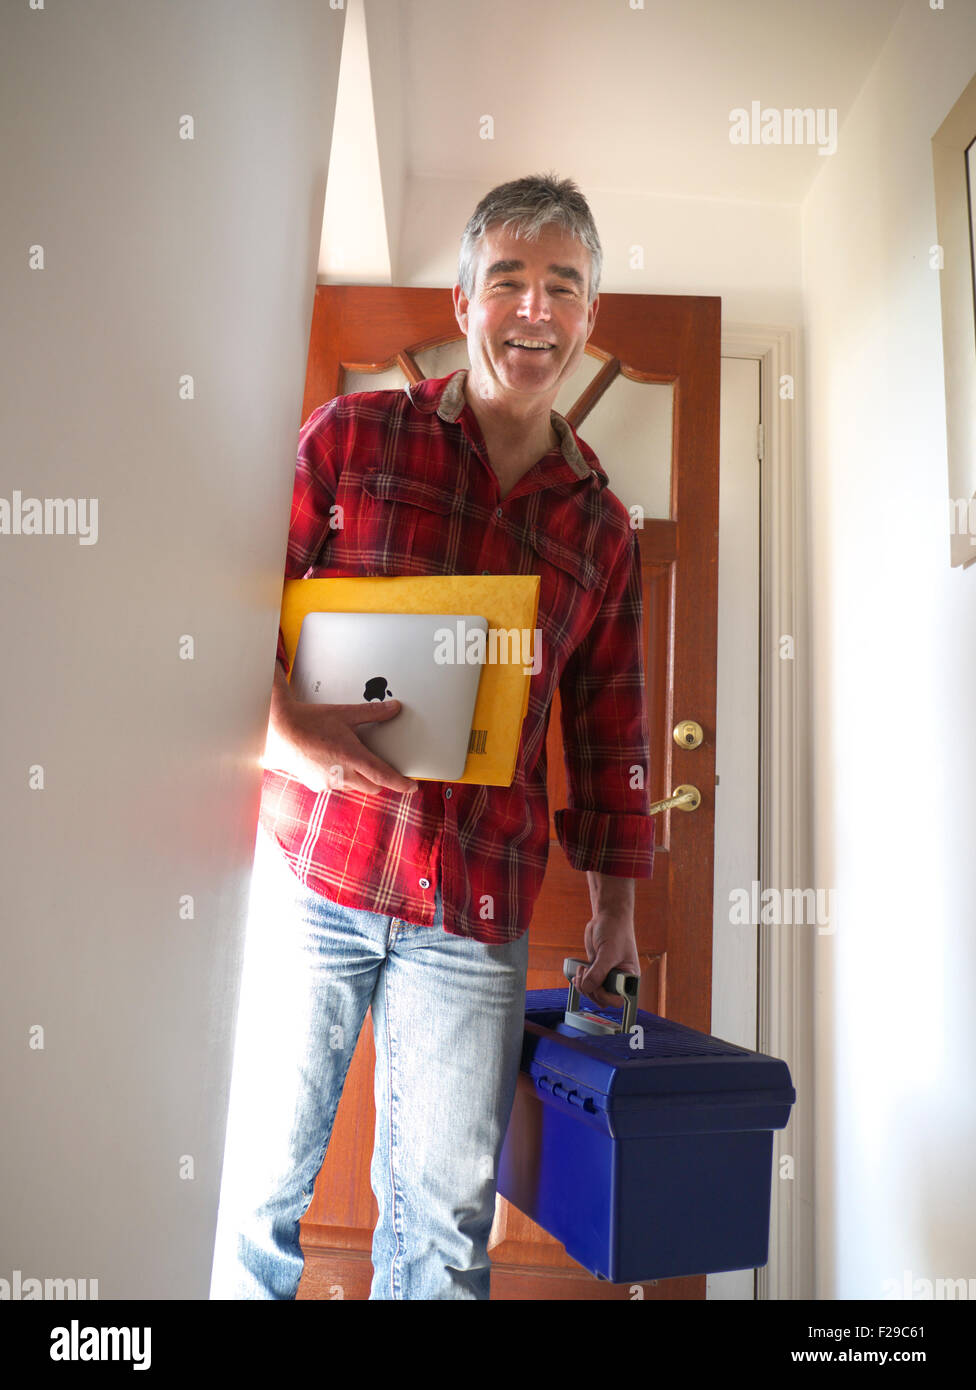 Technicien OUVRIER DOMESTIQUE IPAD Happy smiling commerçant avec l'iPad d'arriver à ouvrir la porte de la maison pour des travaux d'entretien de chaudière réparation sécurité Banque D'Images